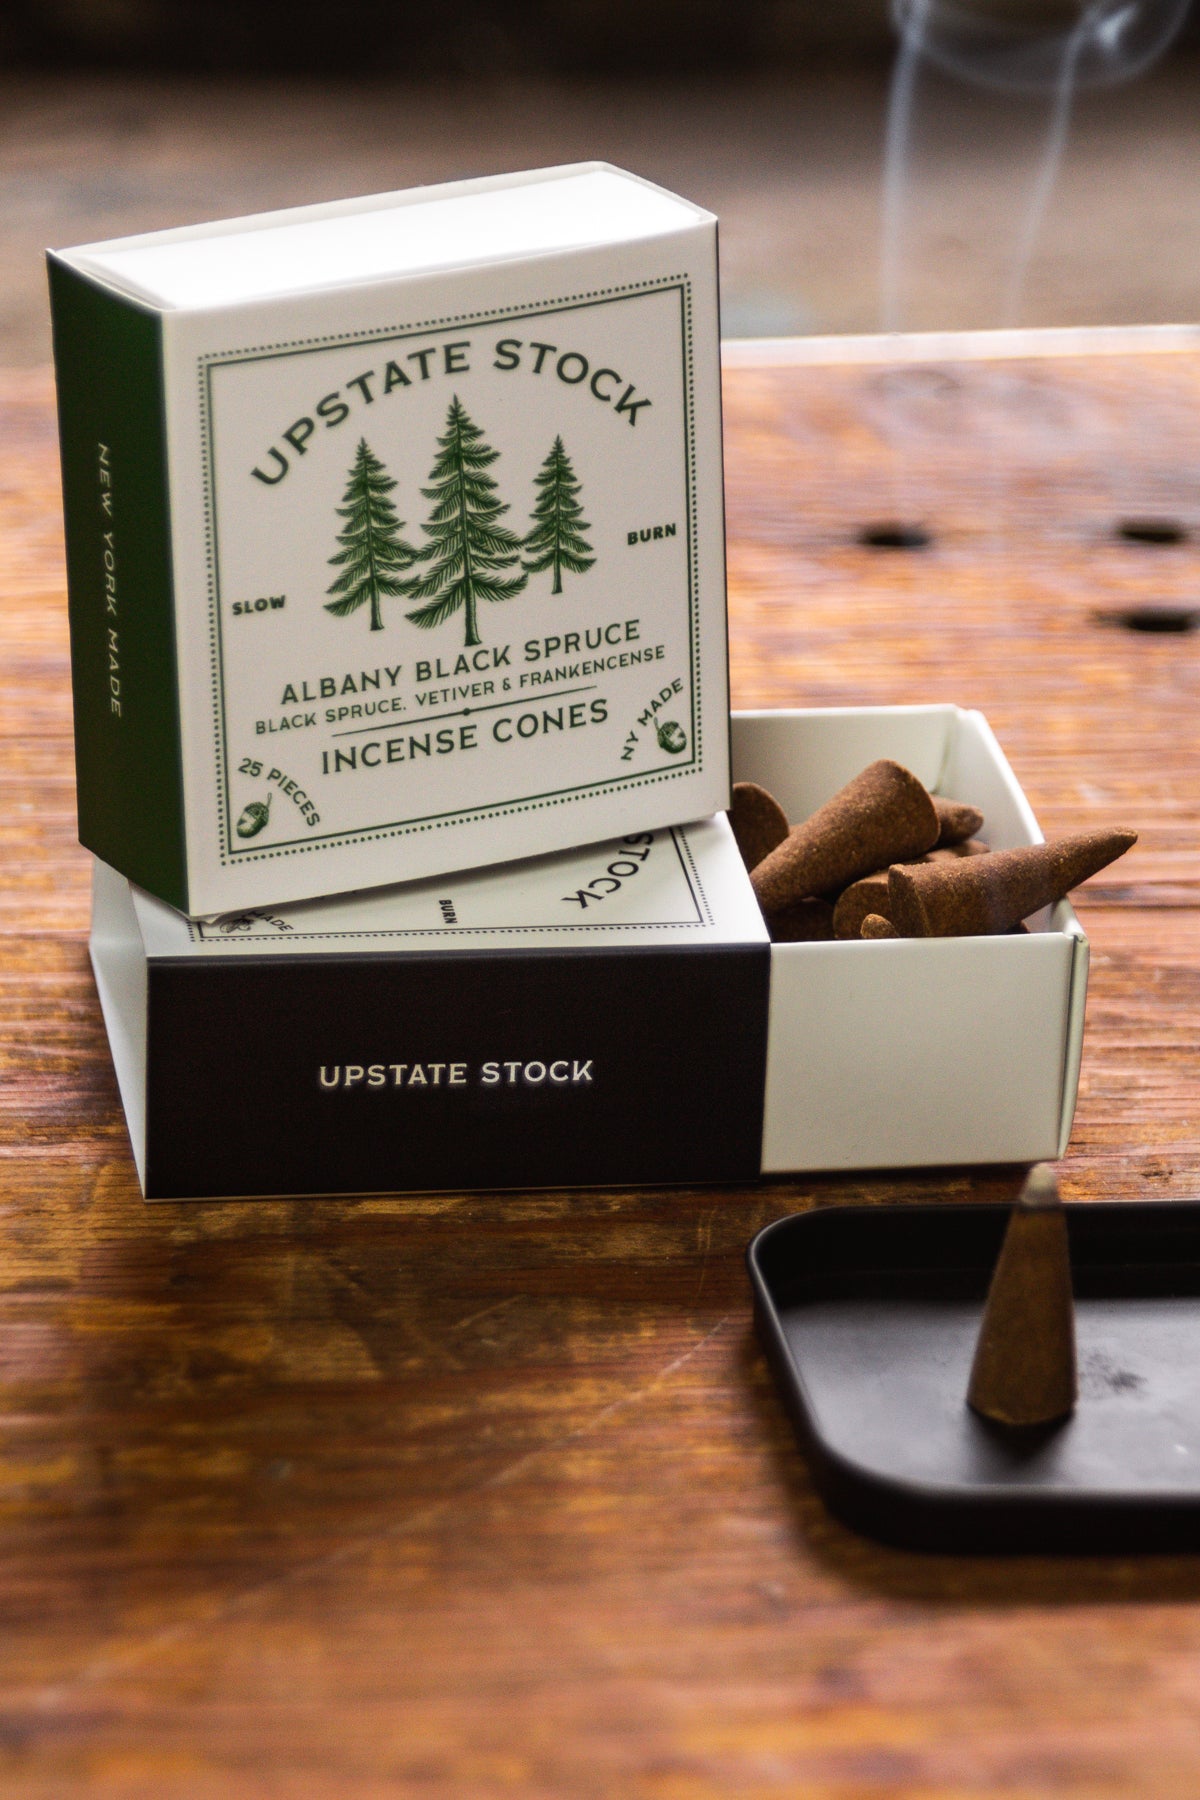 Albany Black Spruce - 25 Piece Incense Cone Box